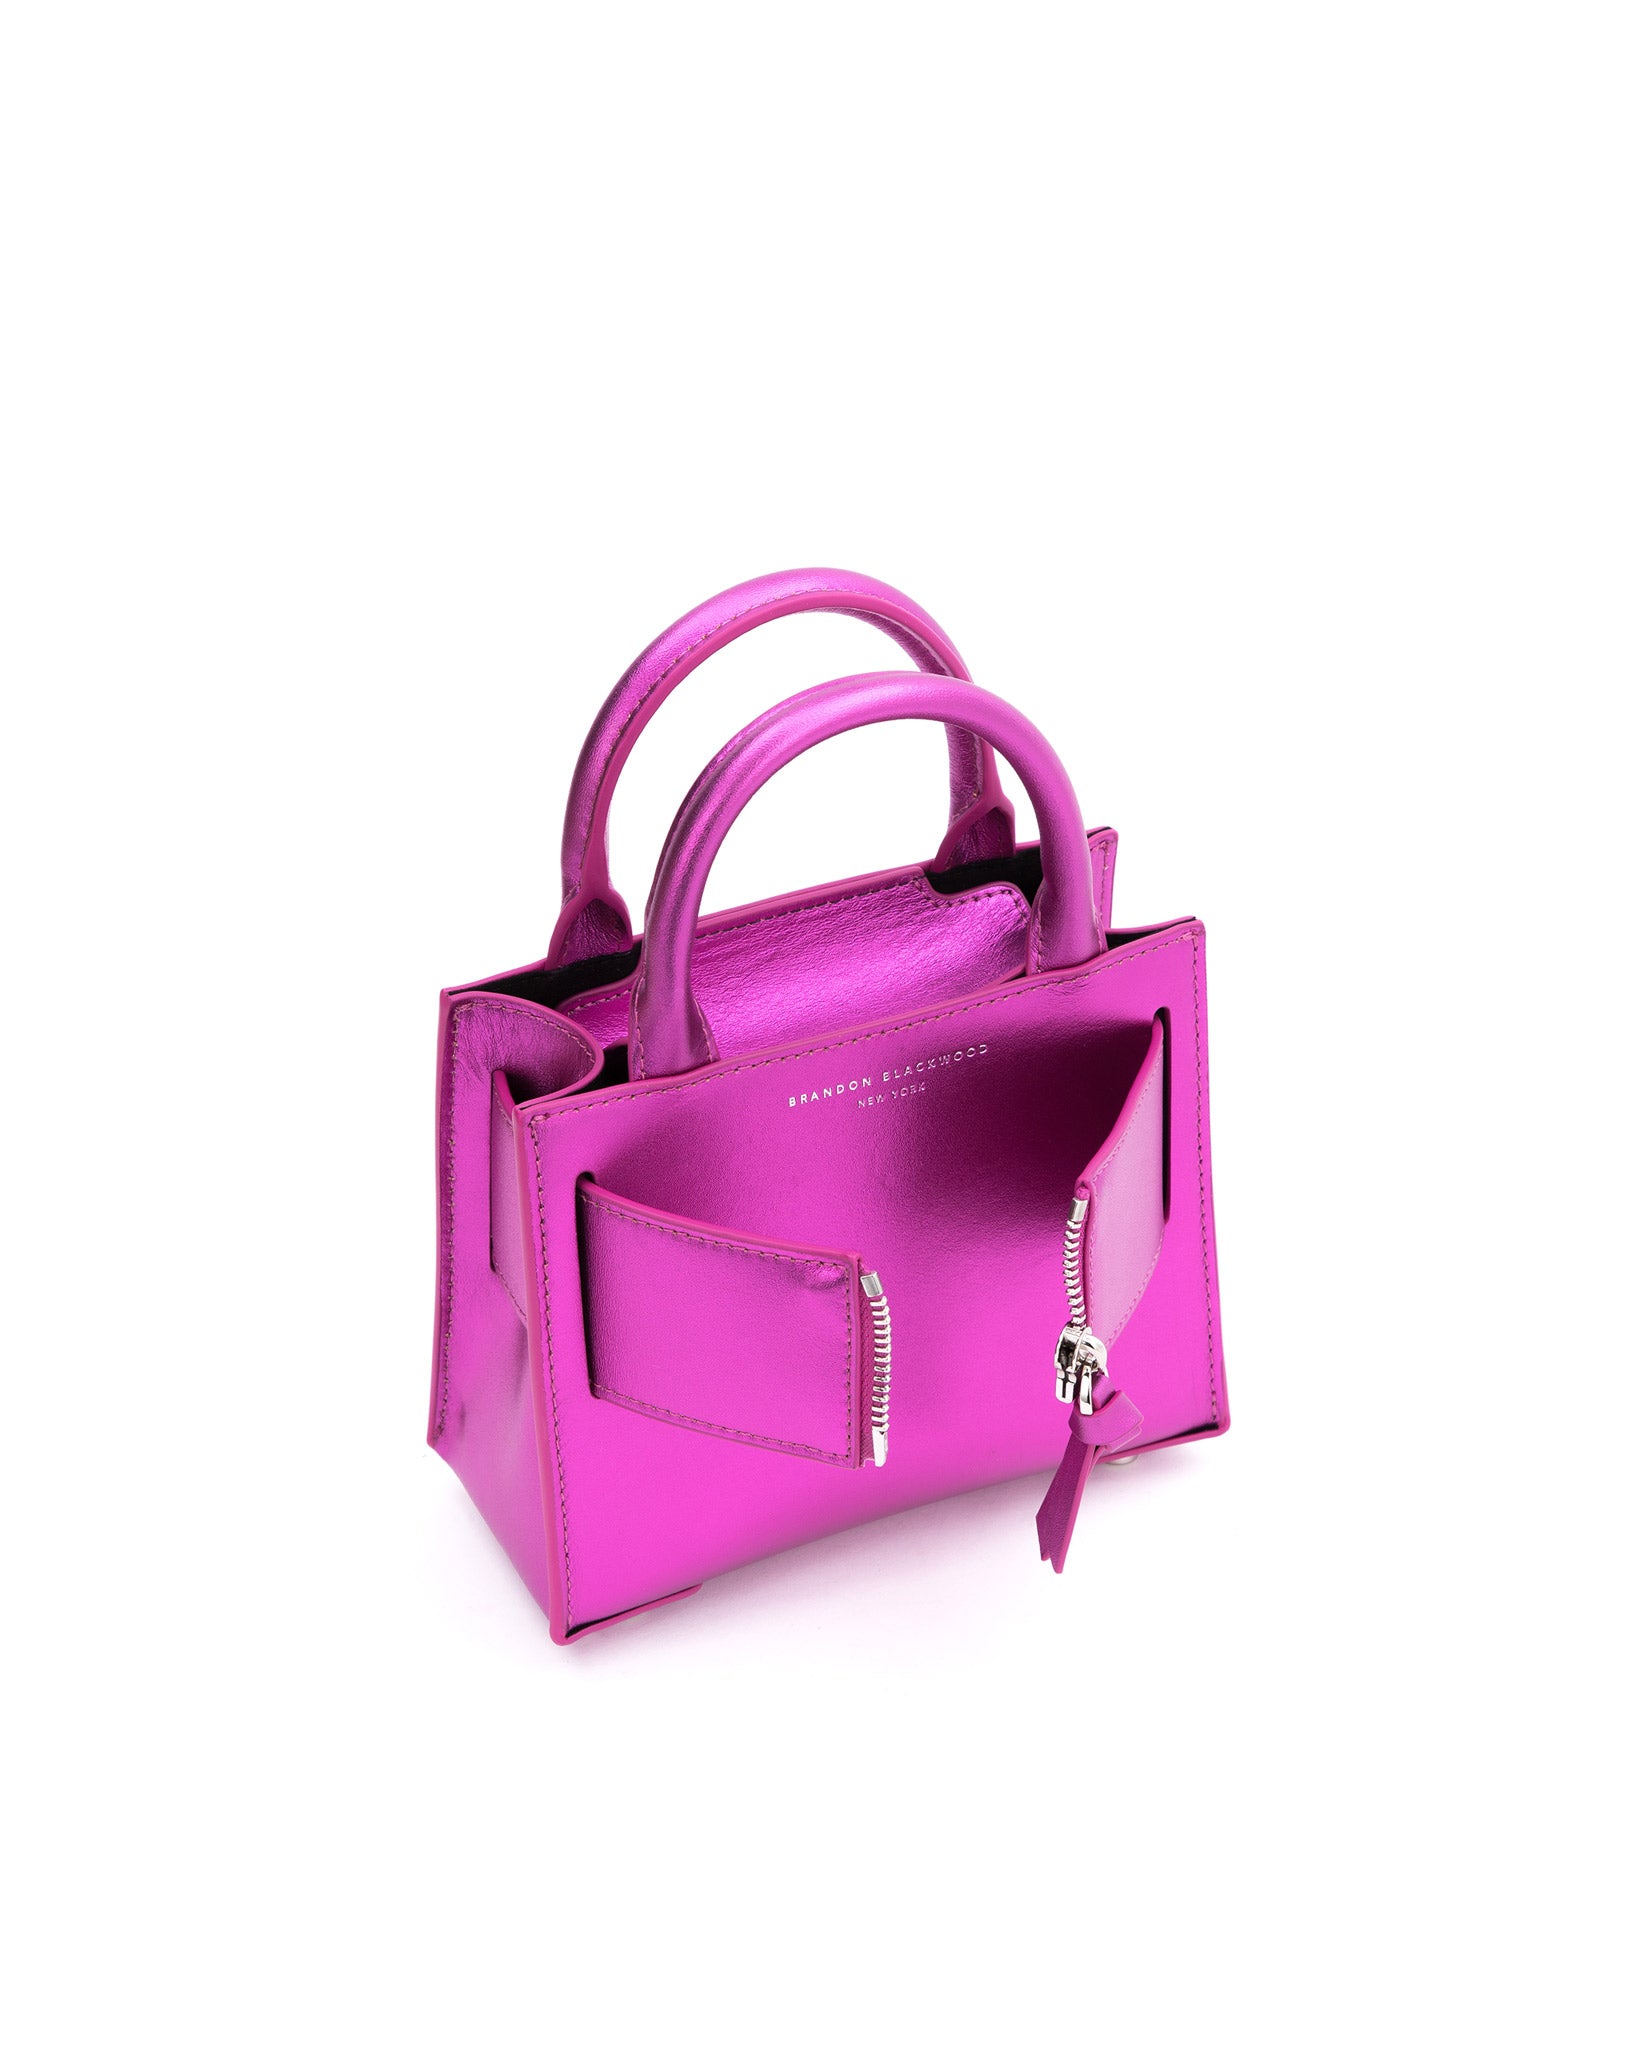 LV Candle handbag Pink - Kbk Collective